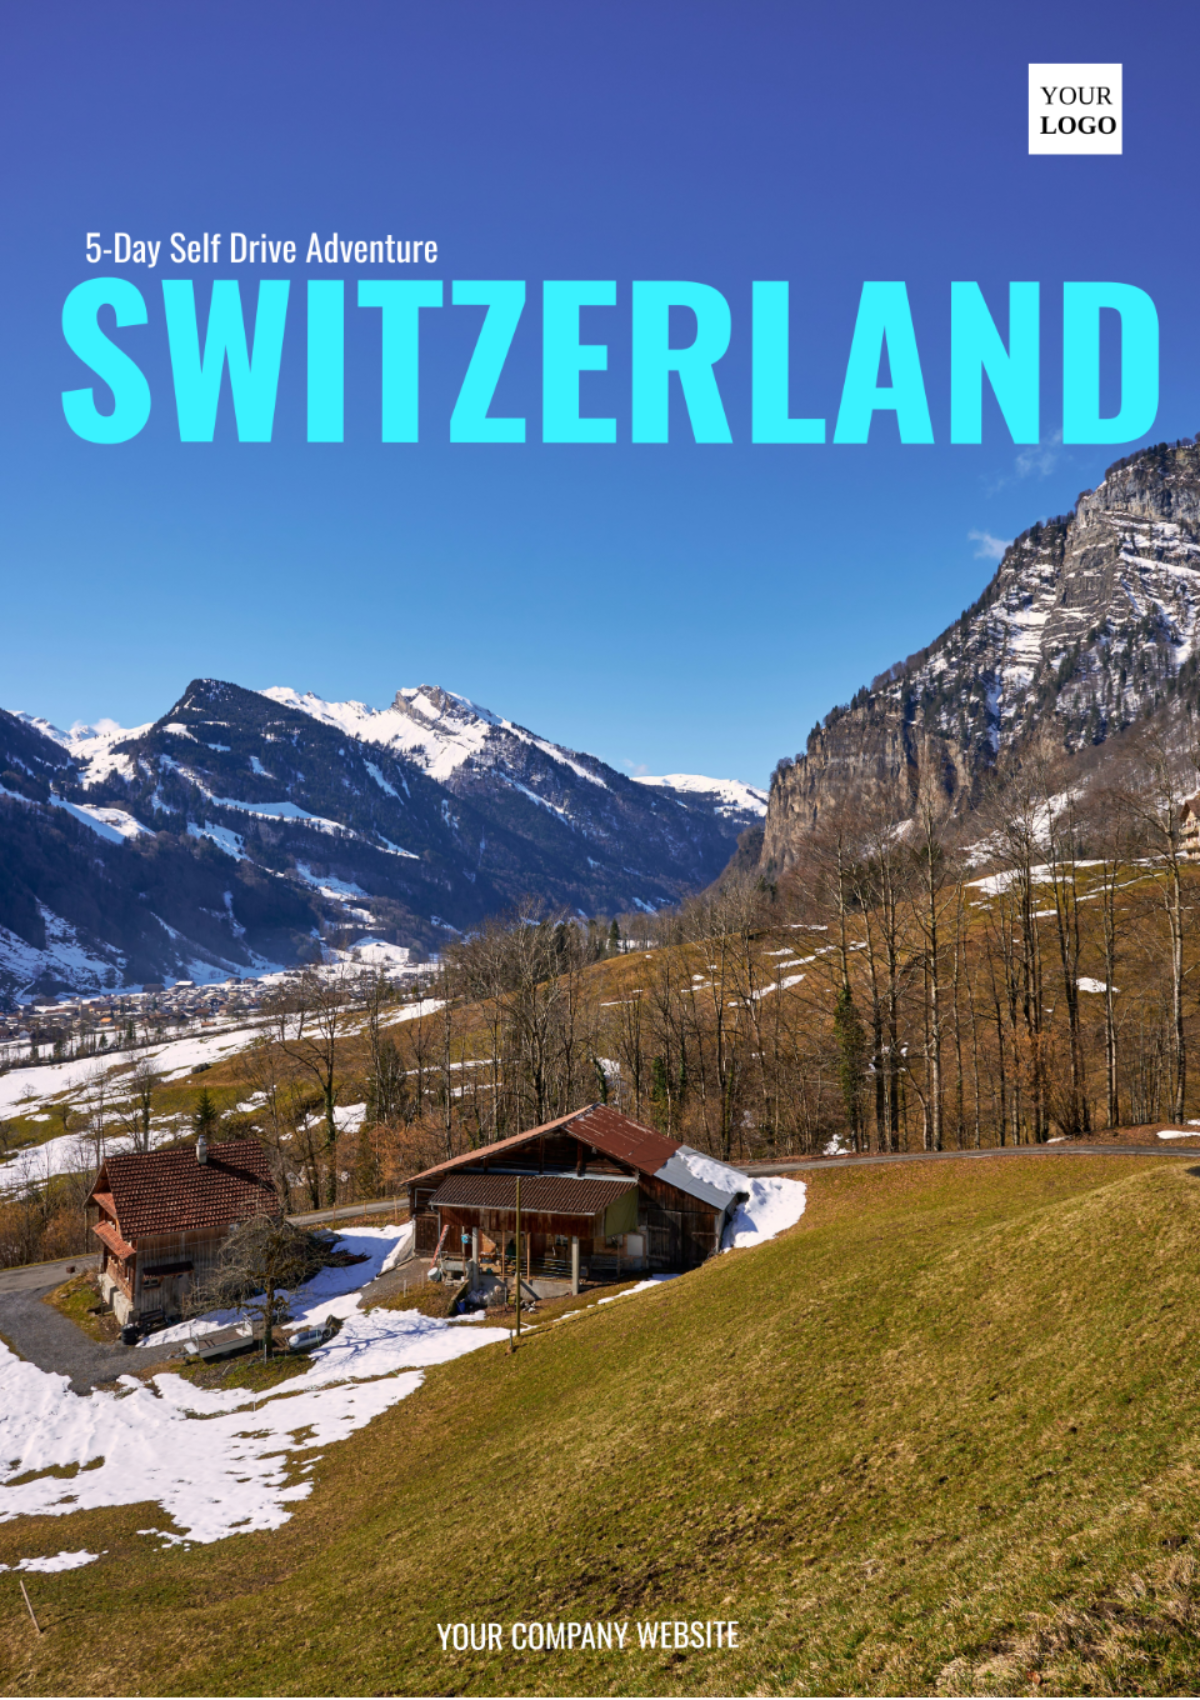 Switzerland Self Drive Itinerary Template